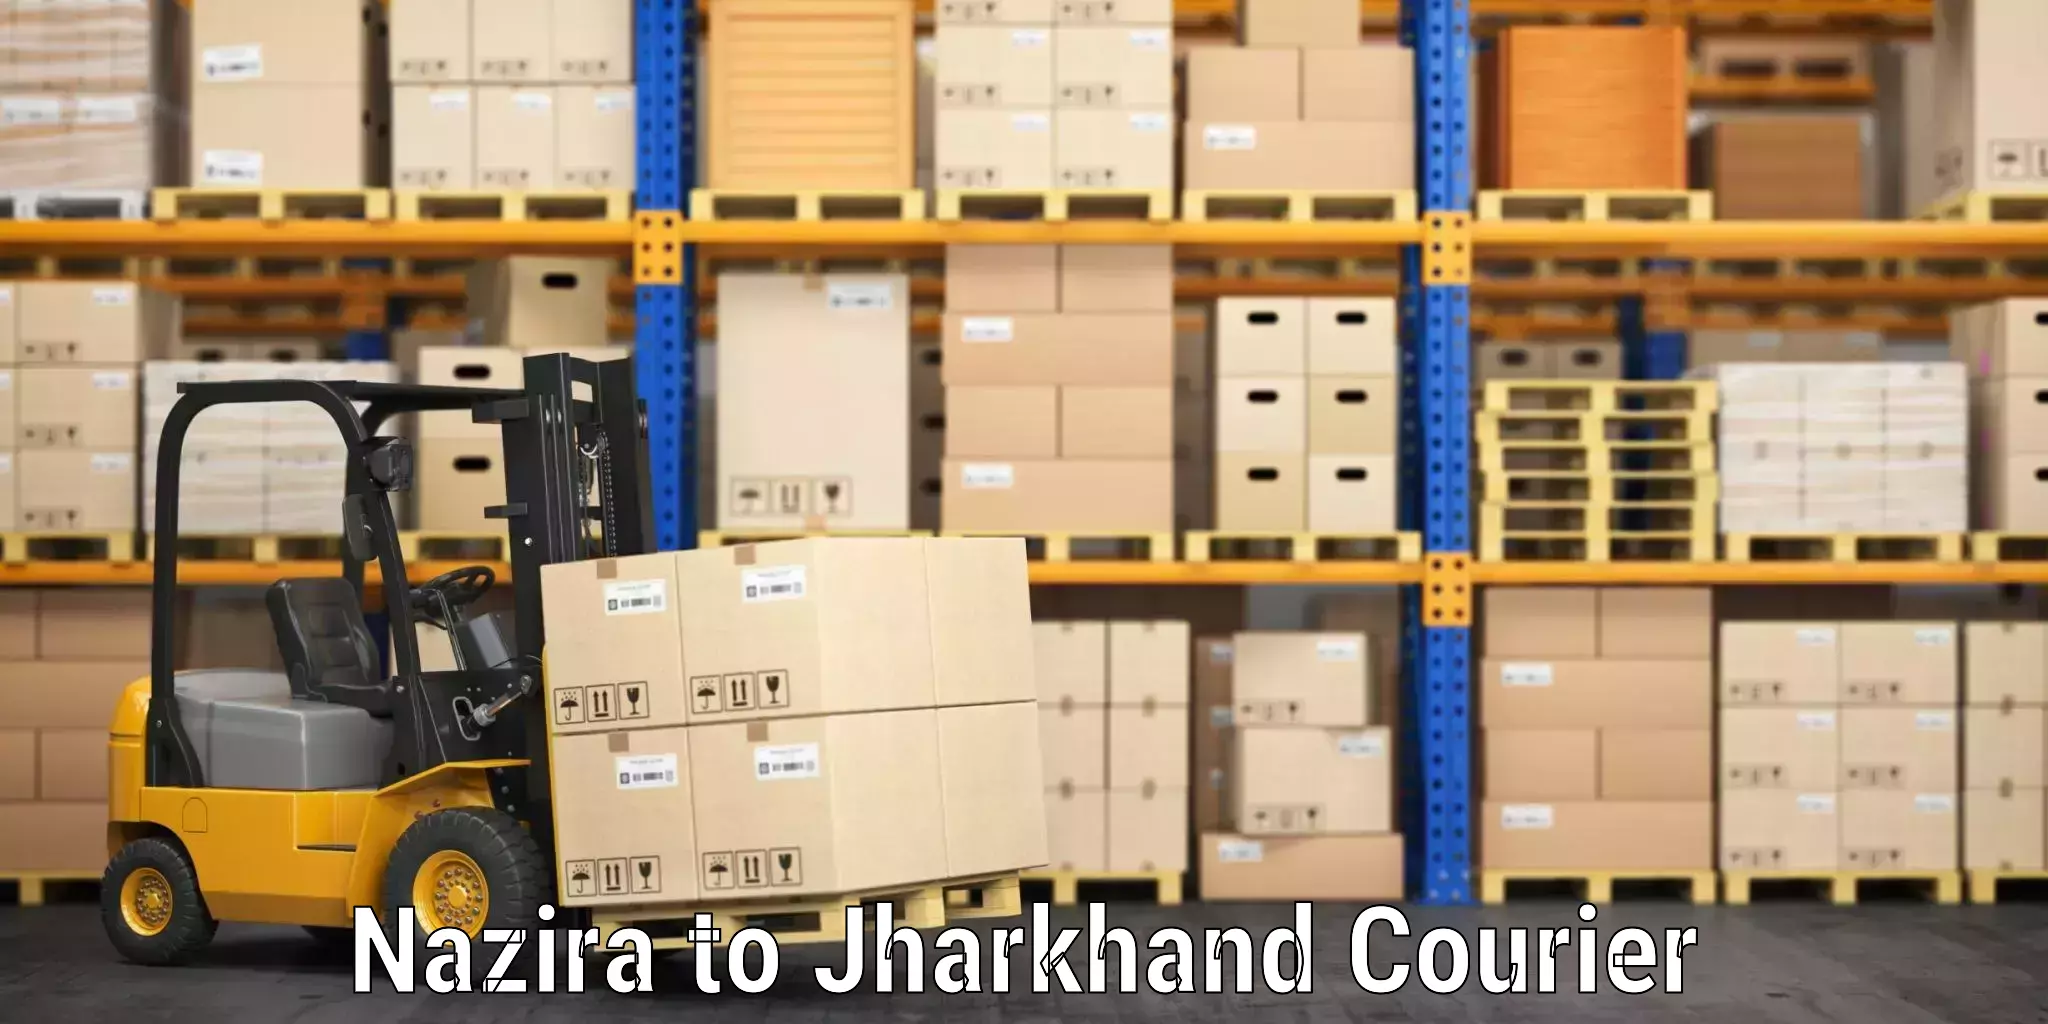 Luggage shipment tracking Nazira to IIIT Ranchi